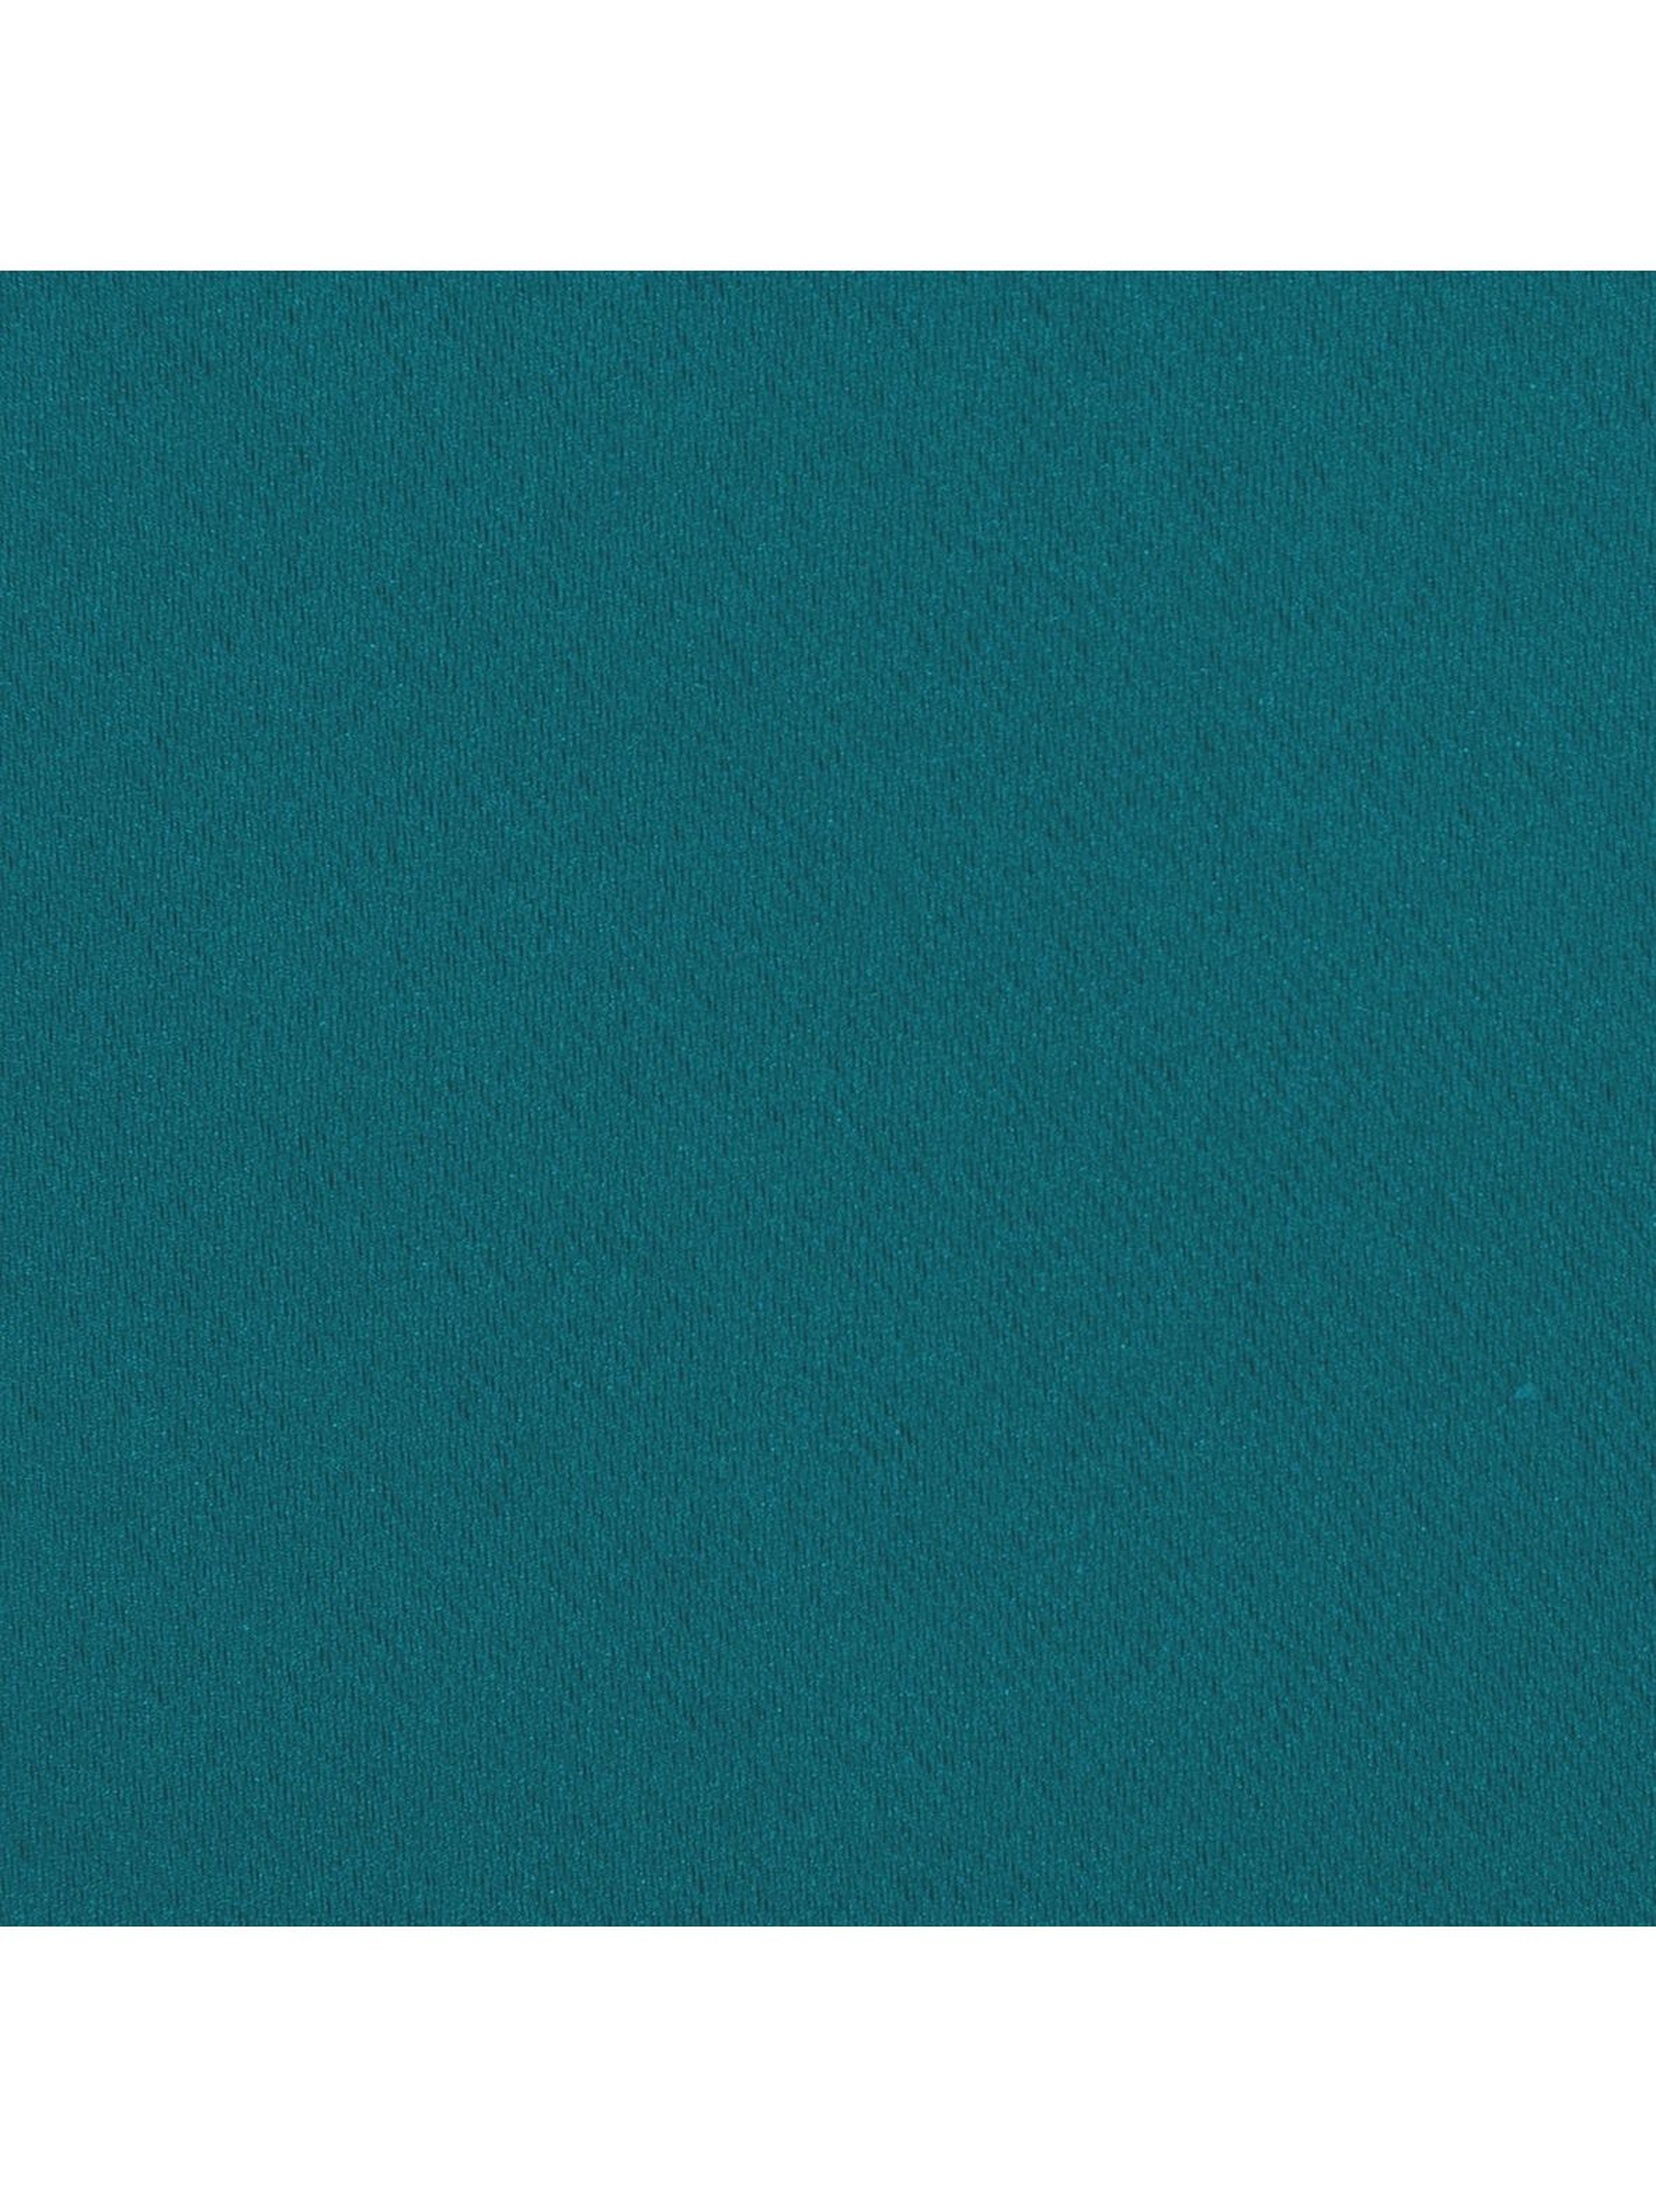 Zasłona jednokolorowa zaciemniająca - turkusowa - 135x270cm